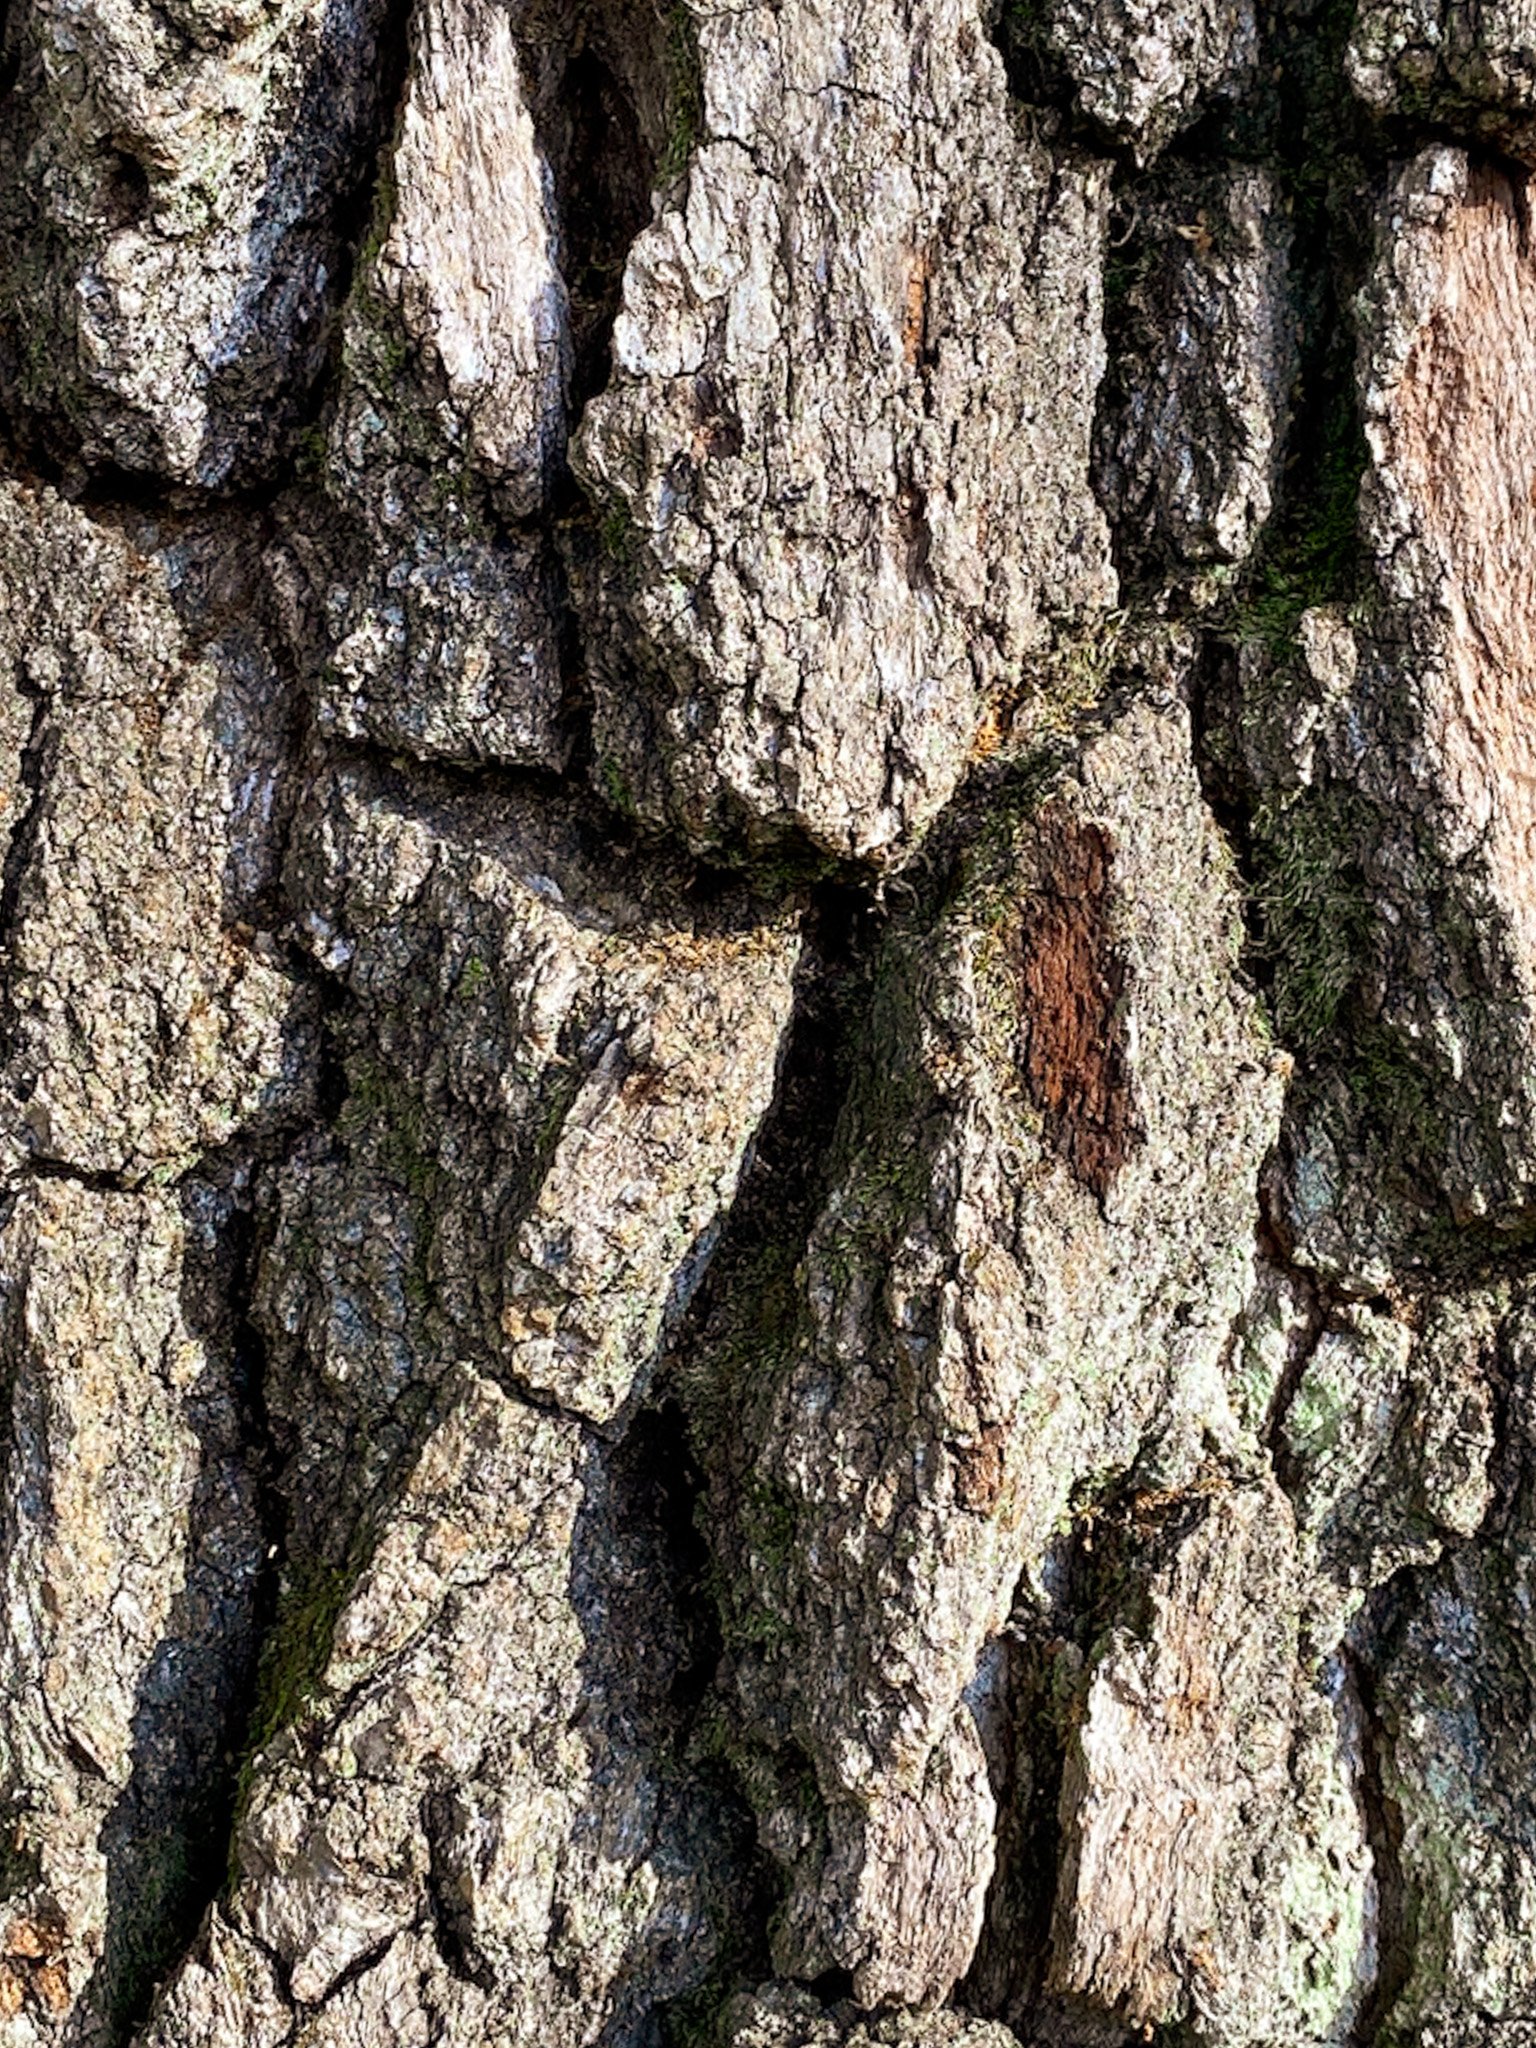 Deeply fissured oak bark